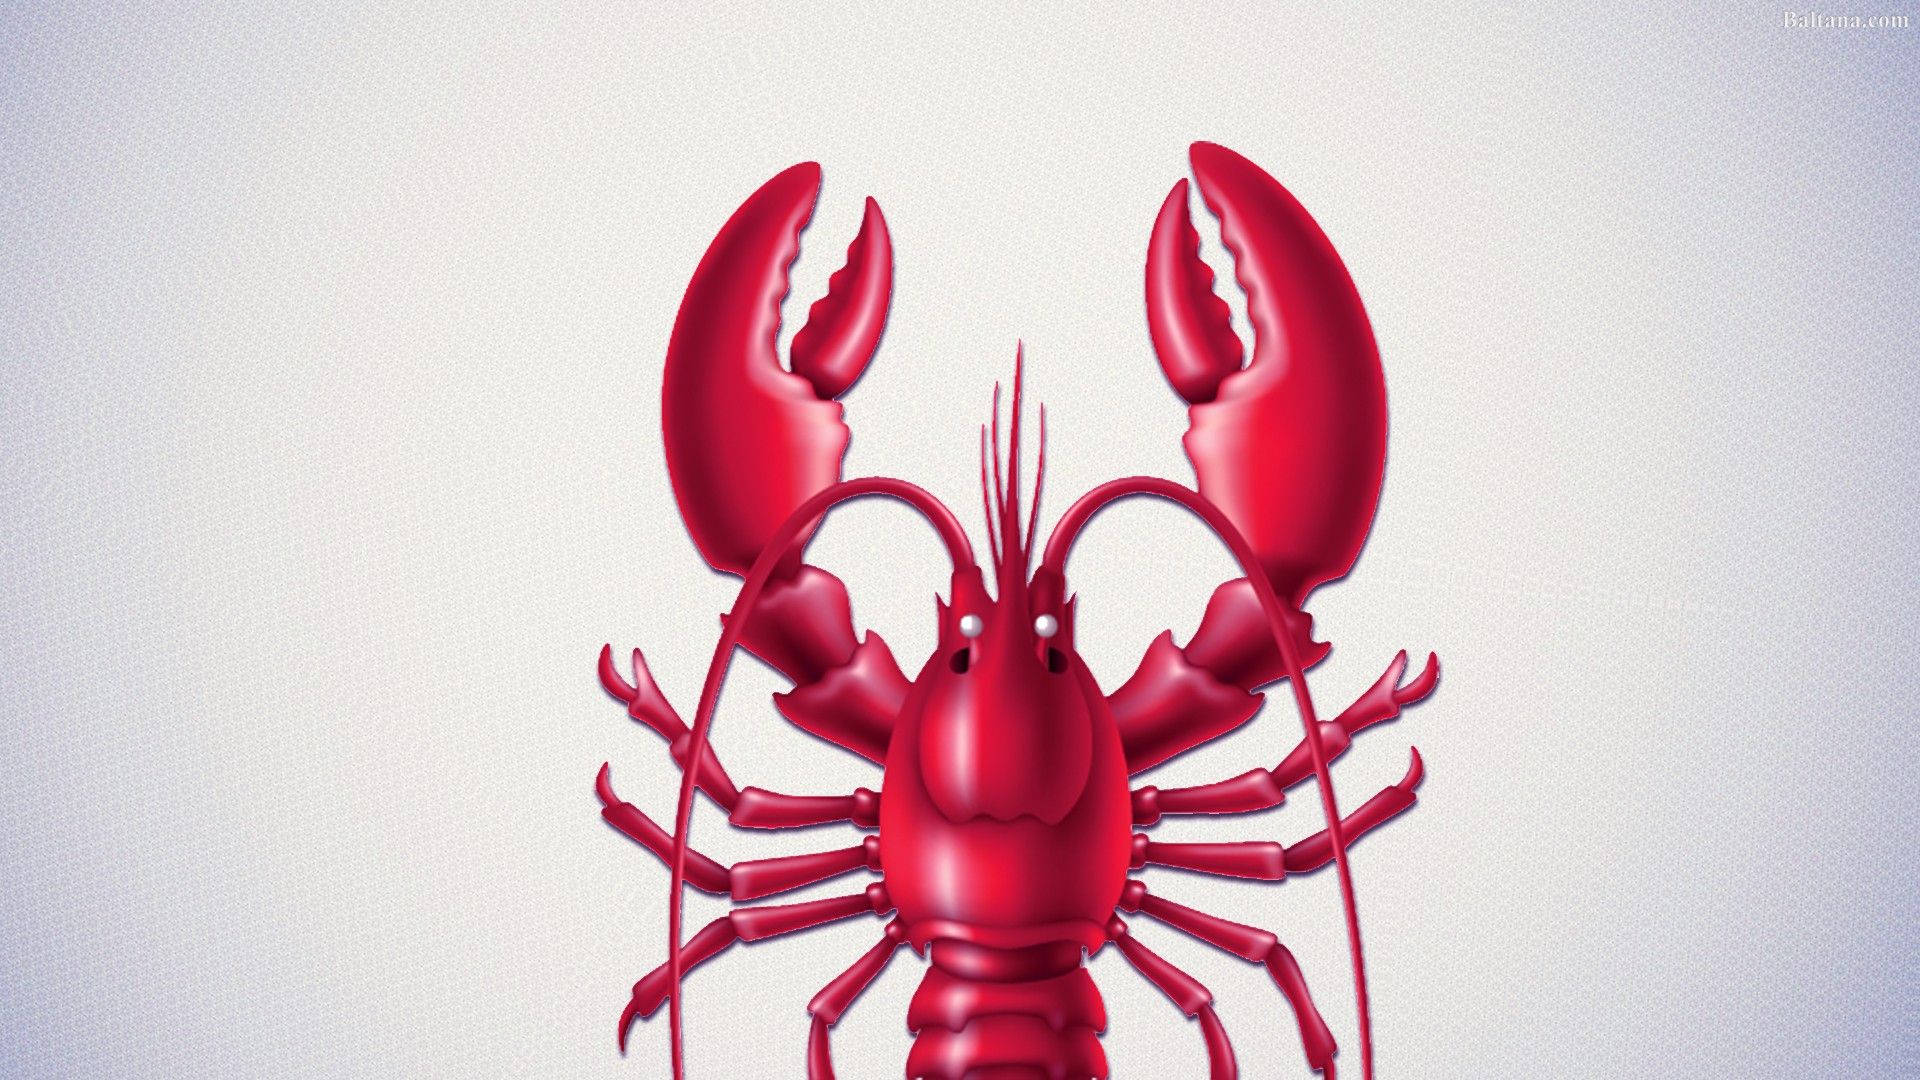 Adorable Lobster Illustration Background